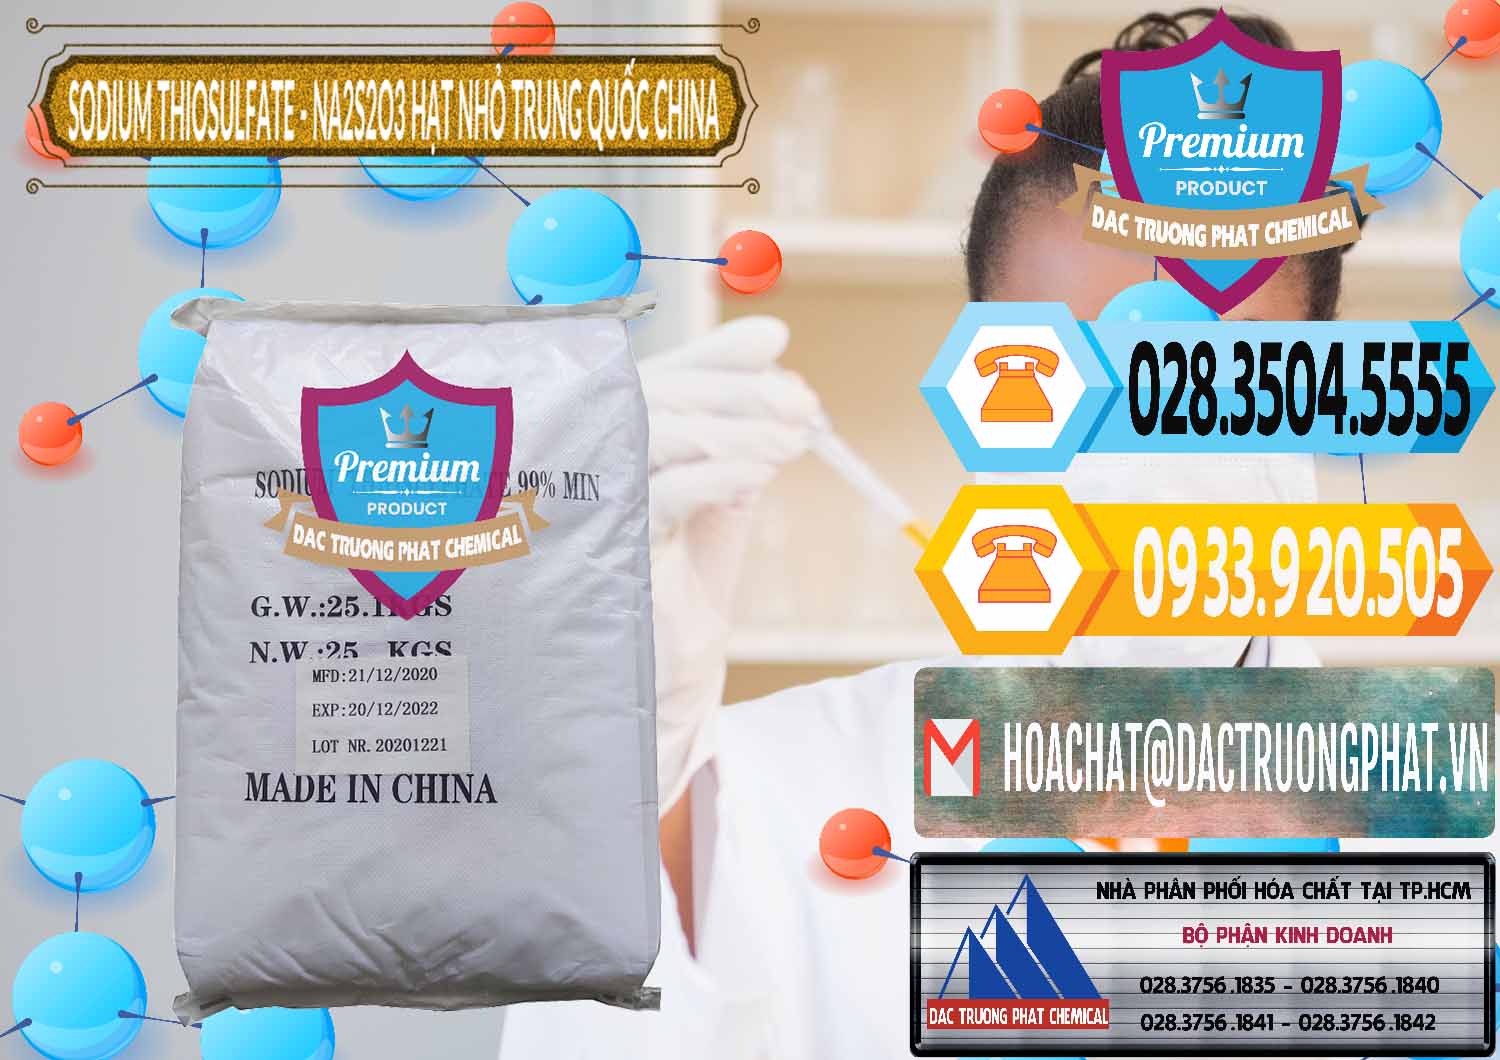 Nơi chuyên kinh doanh _ bán Sodium Thiosulfate - NA2S2O3 Hạt Nhỏ Trung Quốc China - 0204 - Đơn vị chuyên bán - phân phối hóa chất tại TP.HCM - hoachattayrua.net